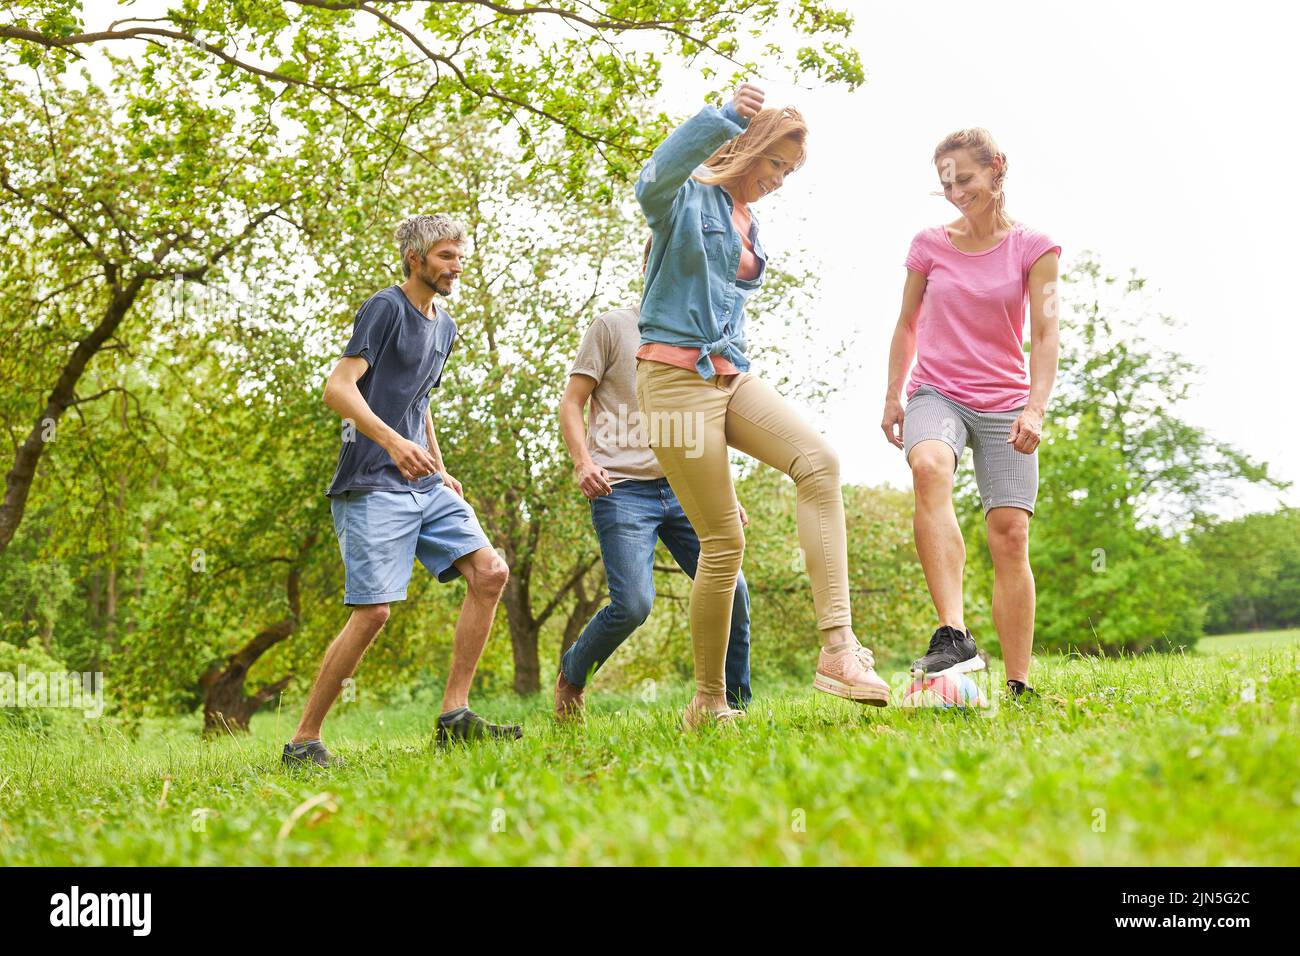 Los jóvenes se divierten jugando al fútbol en un prado en verano Foto de stock